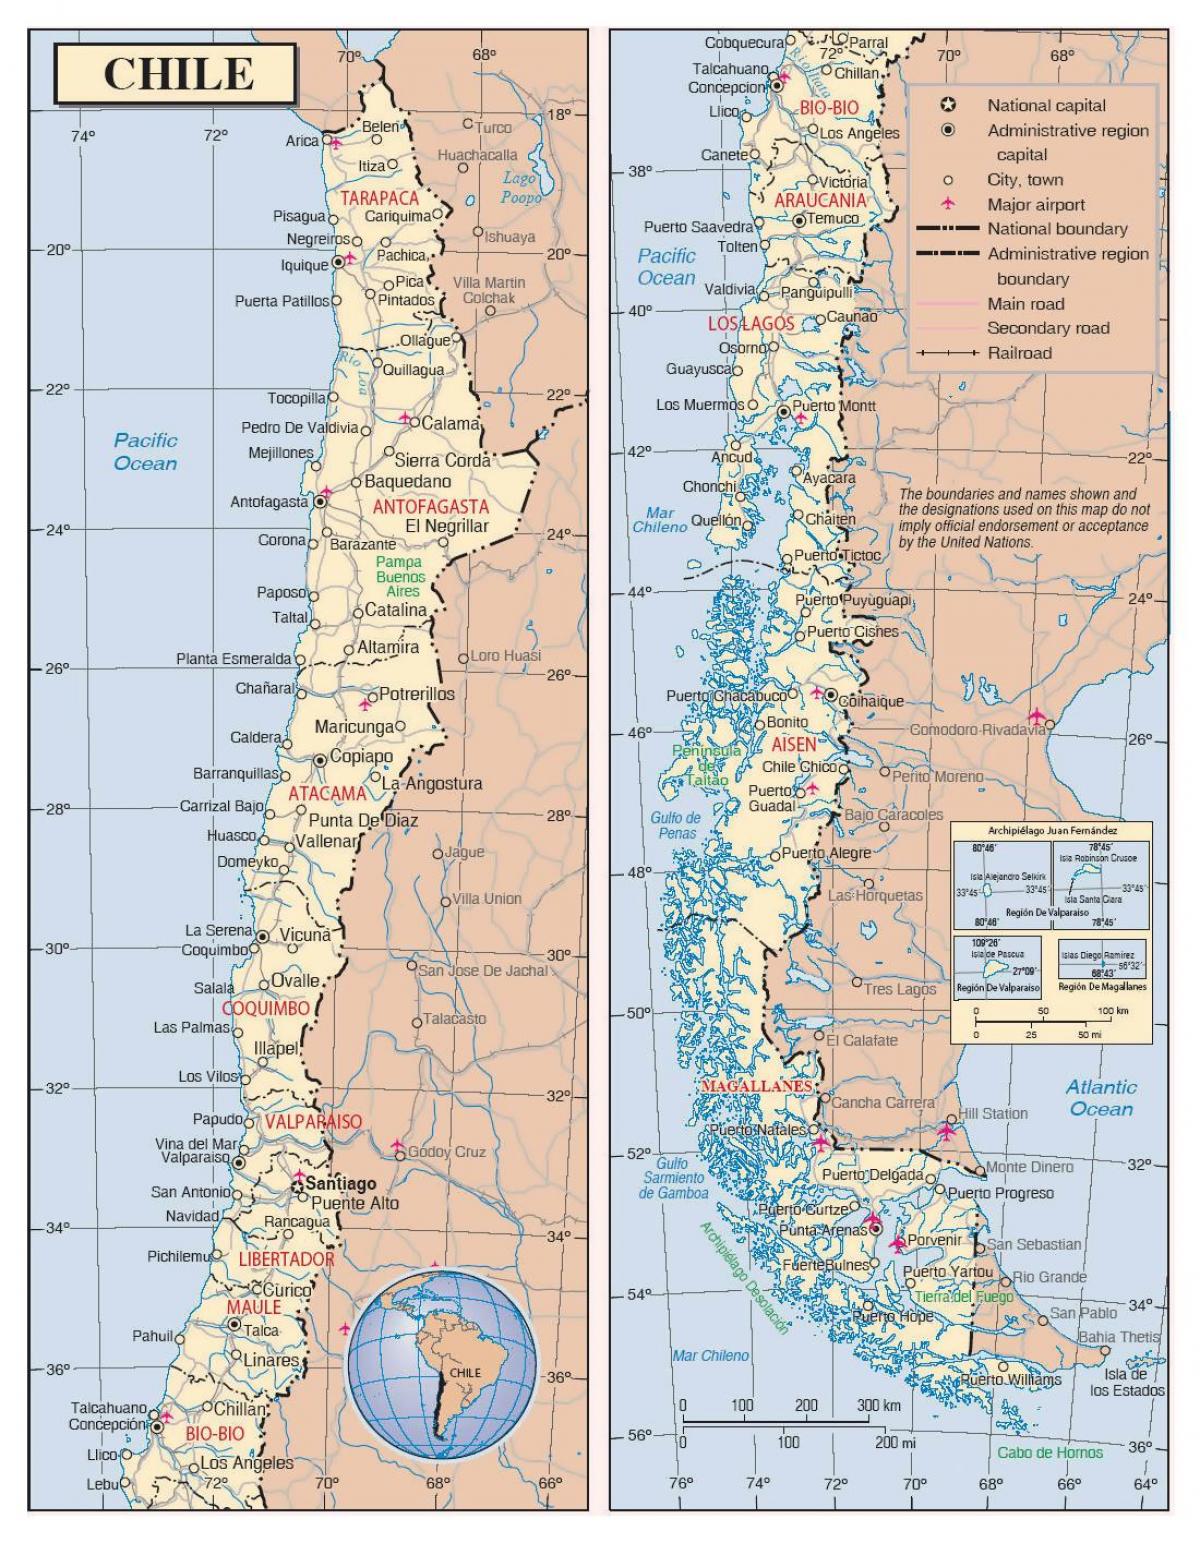 χάρτης με τις πόλεις της Χιλής